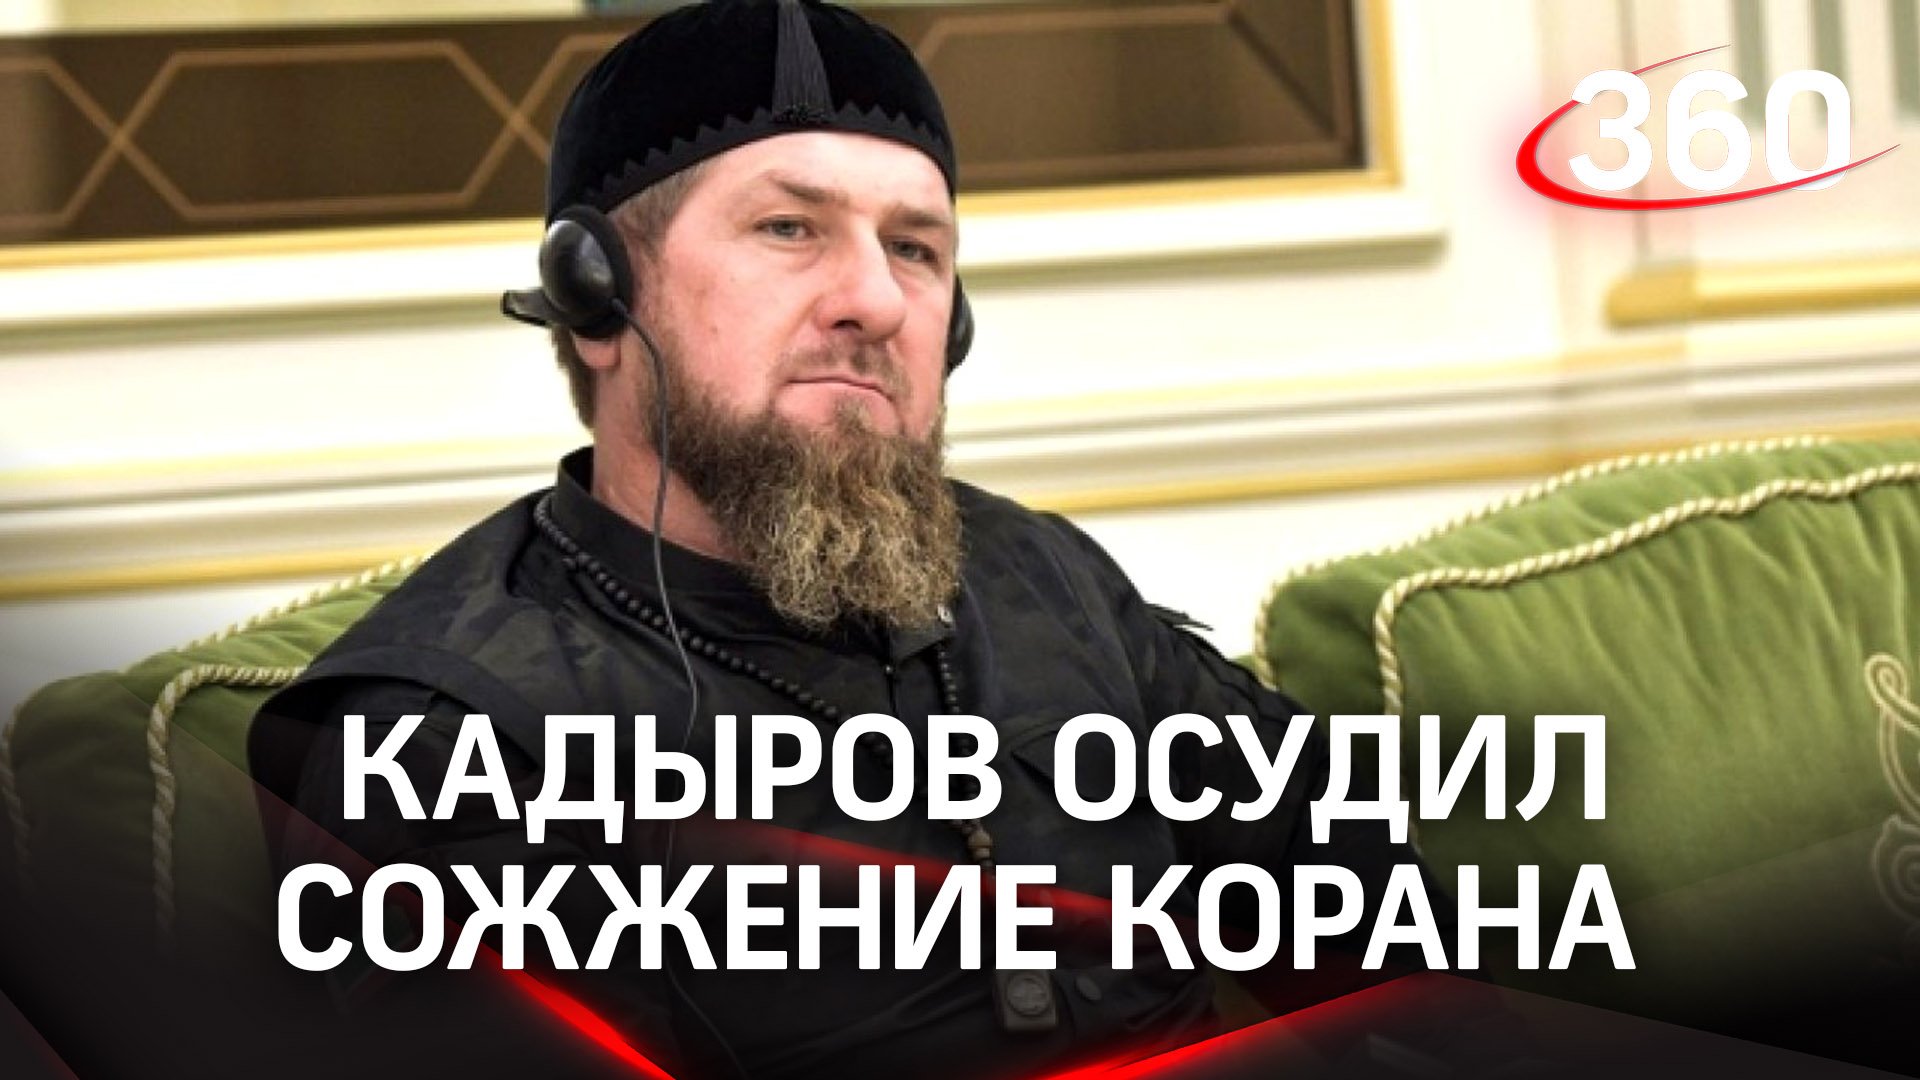 Кадыров пожелал «гореть в аду» за сожжение Корана в Швеции